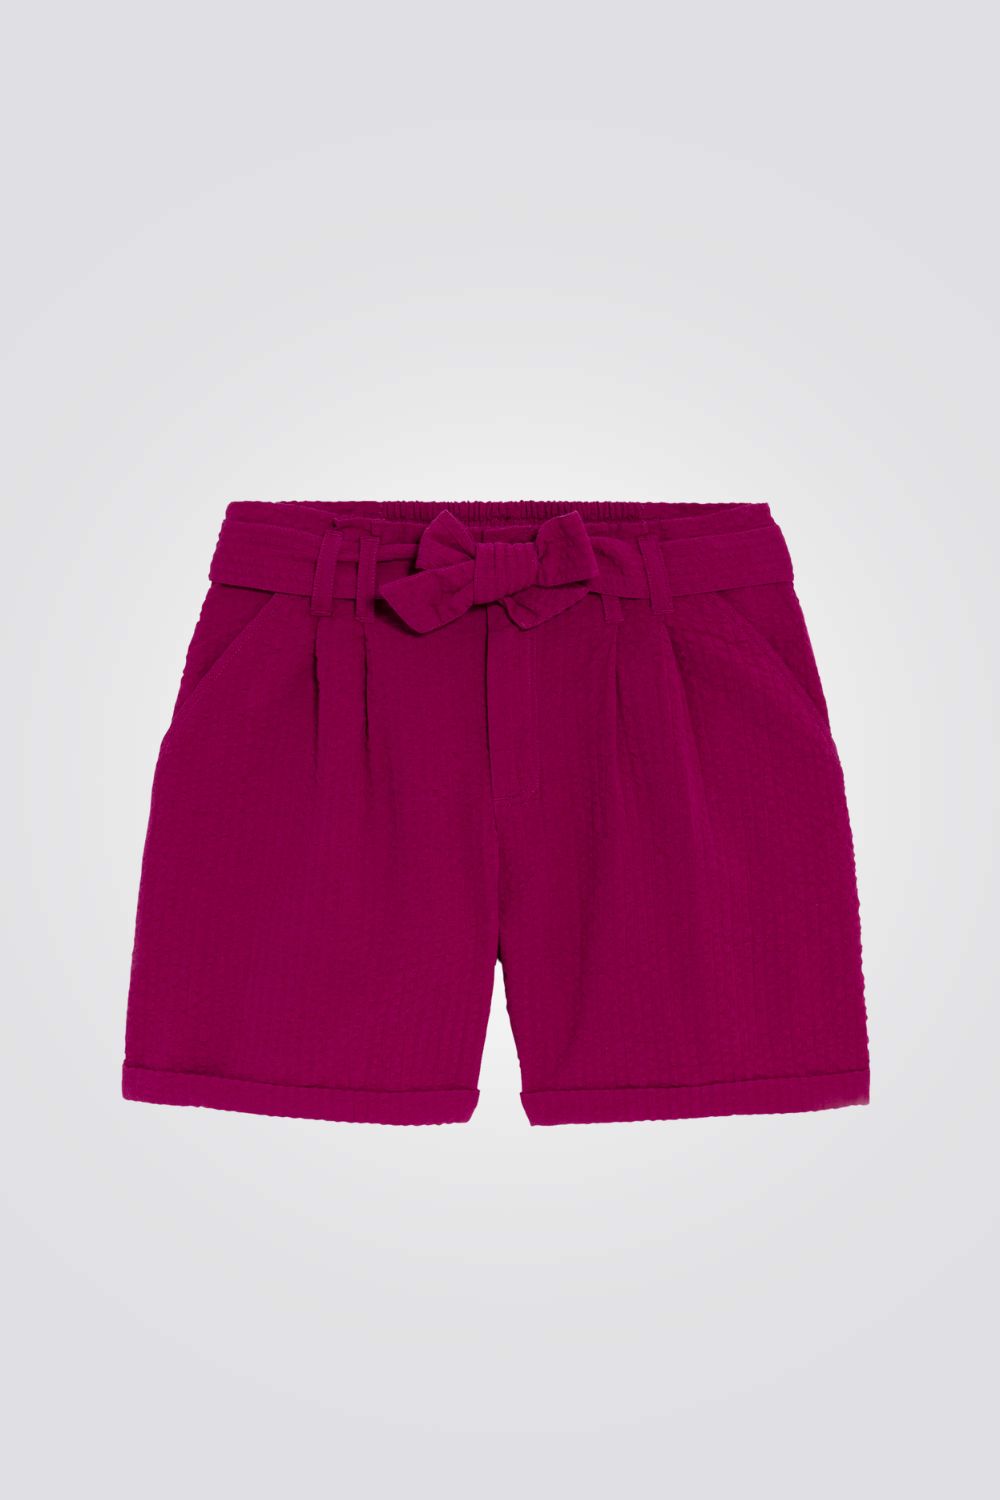 מכנסיים קצרים לילדות בצבע סגול